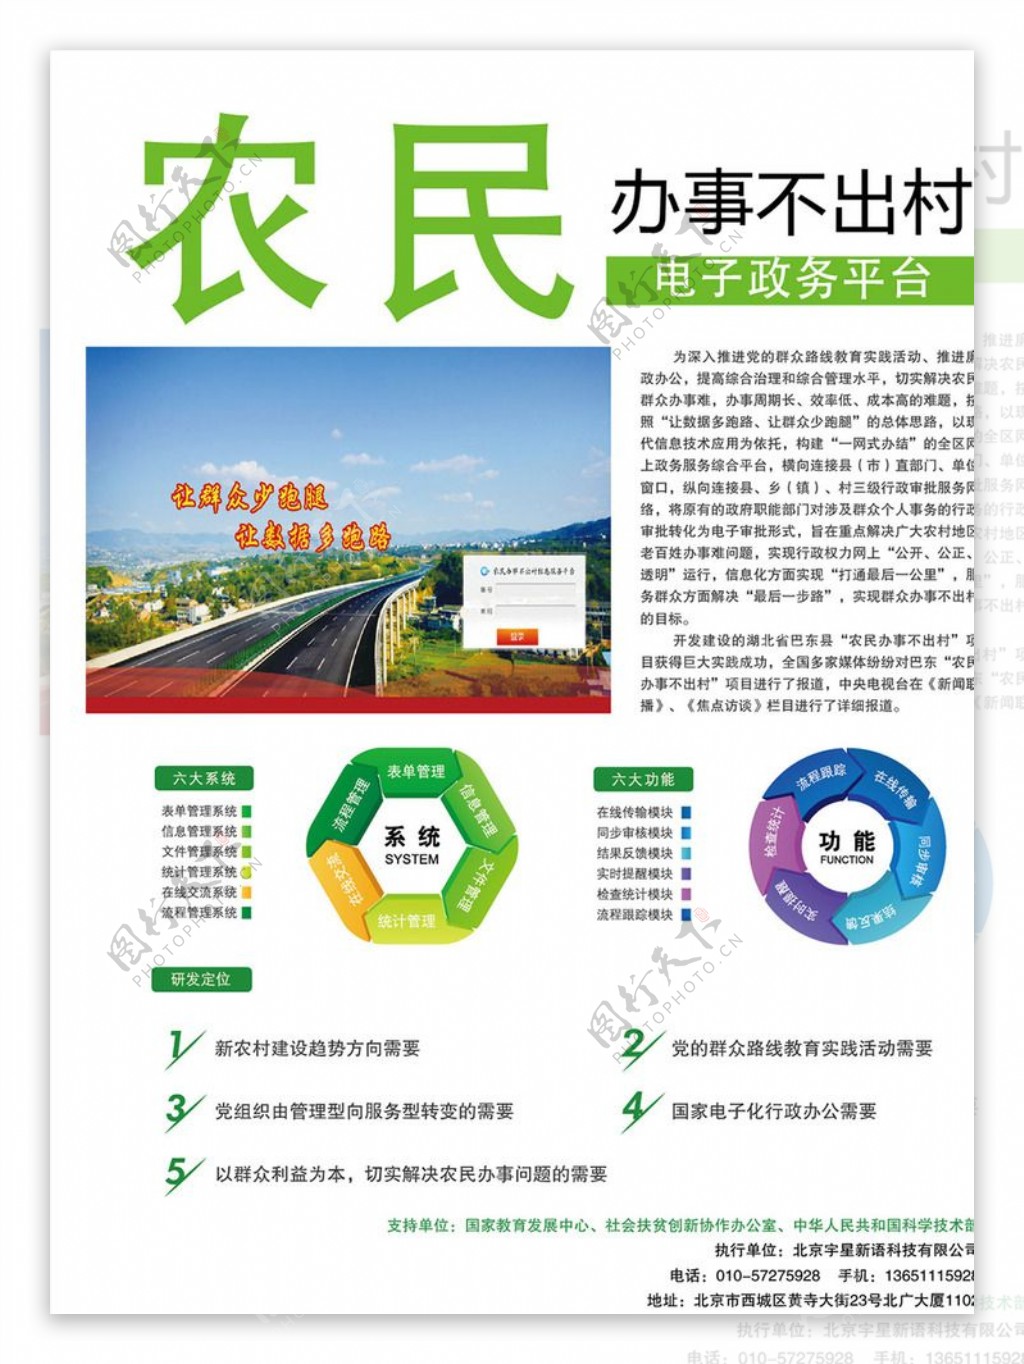 农民电子政务平台彩页设计